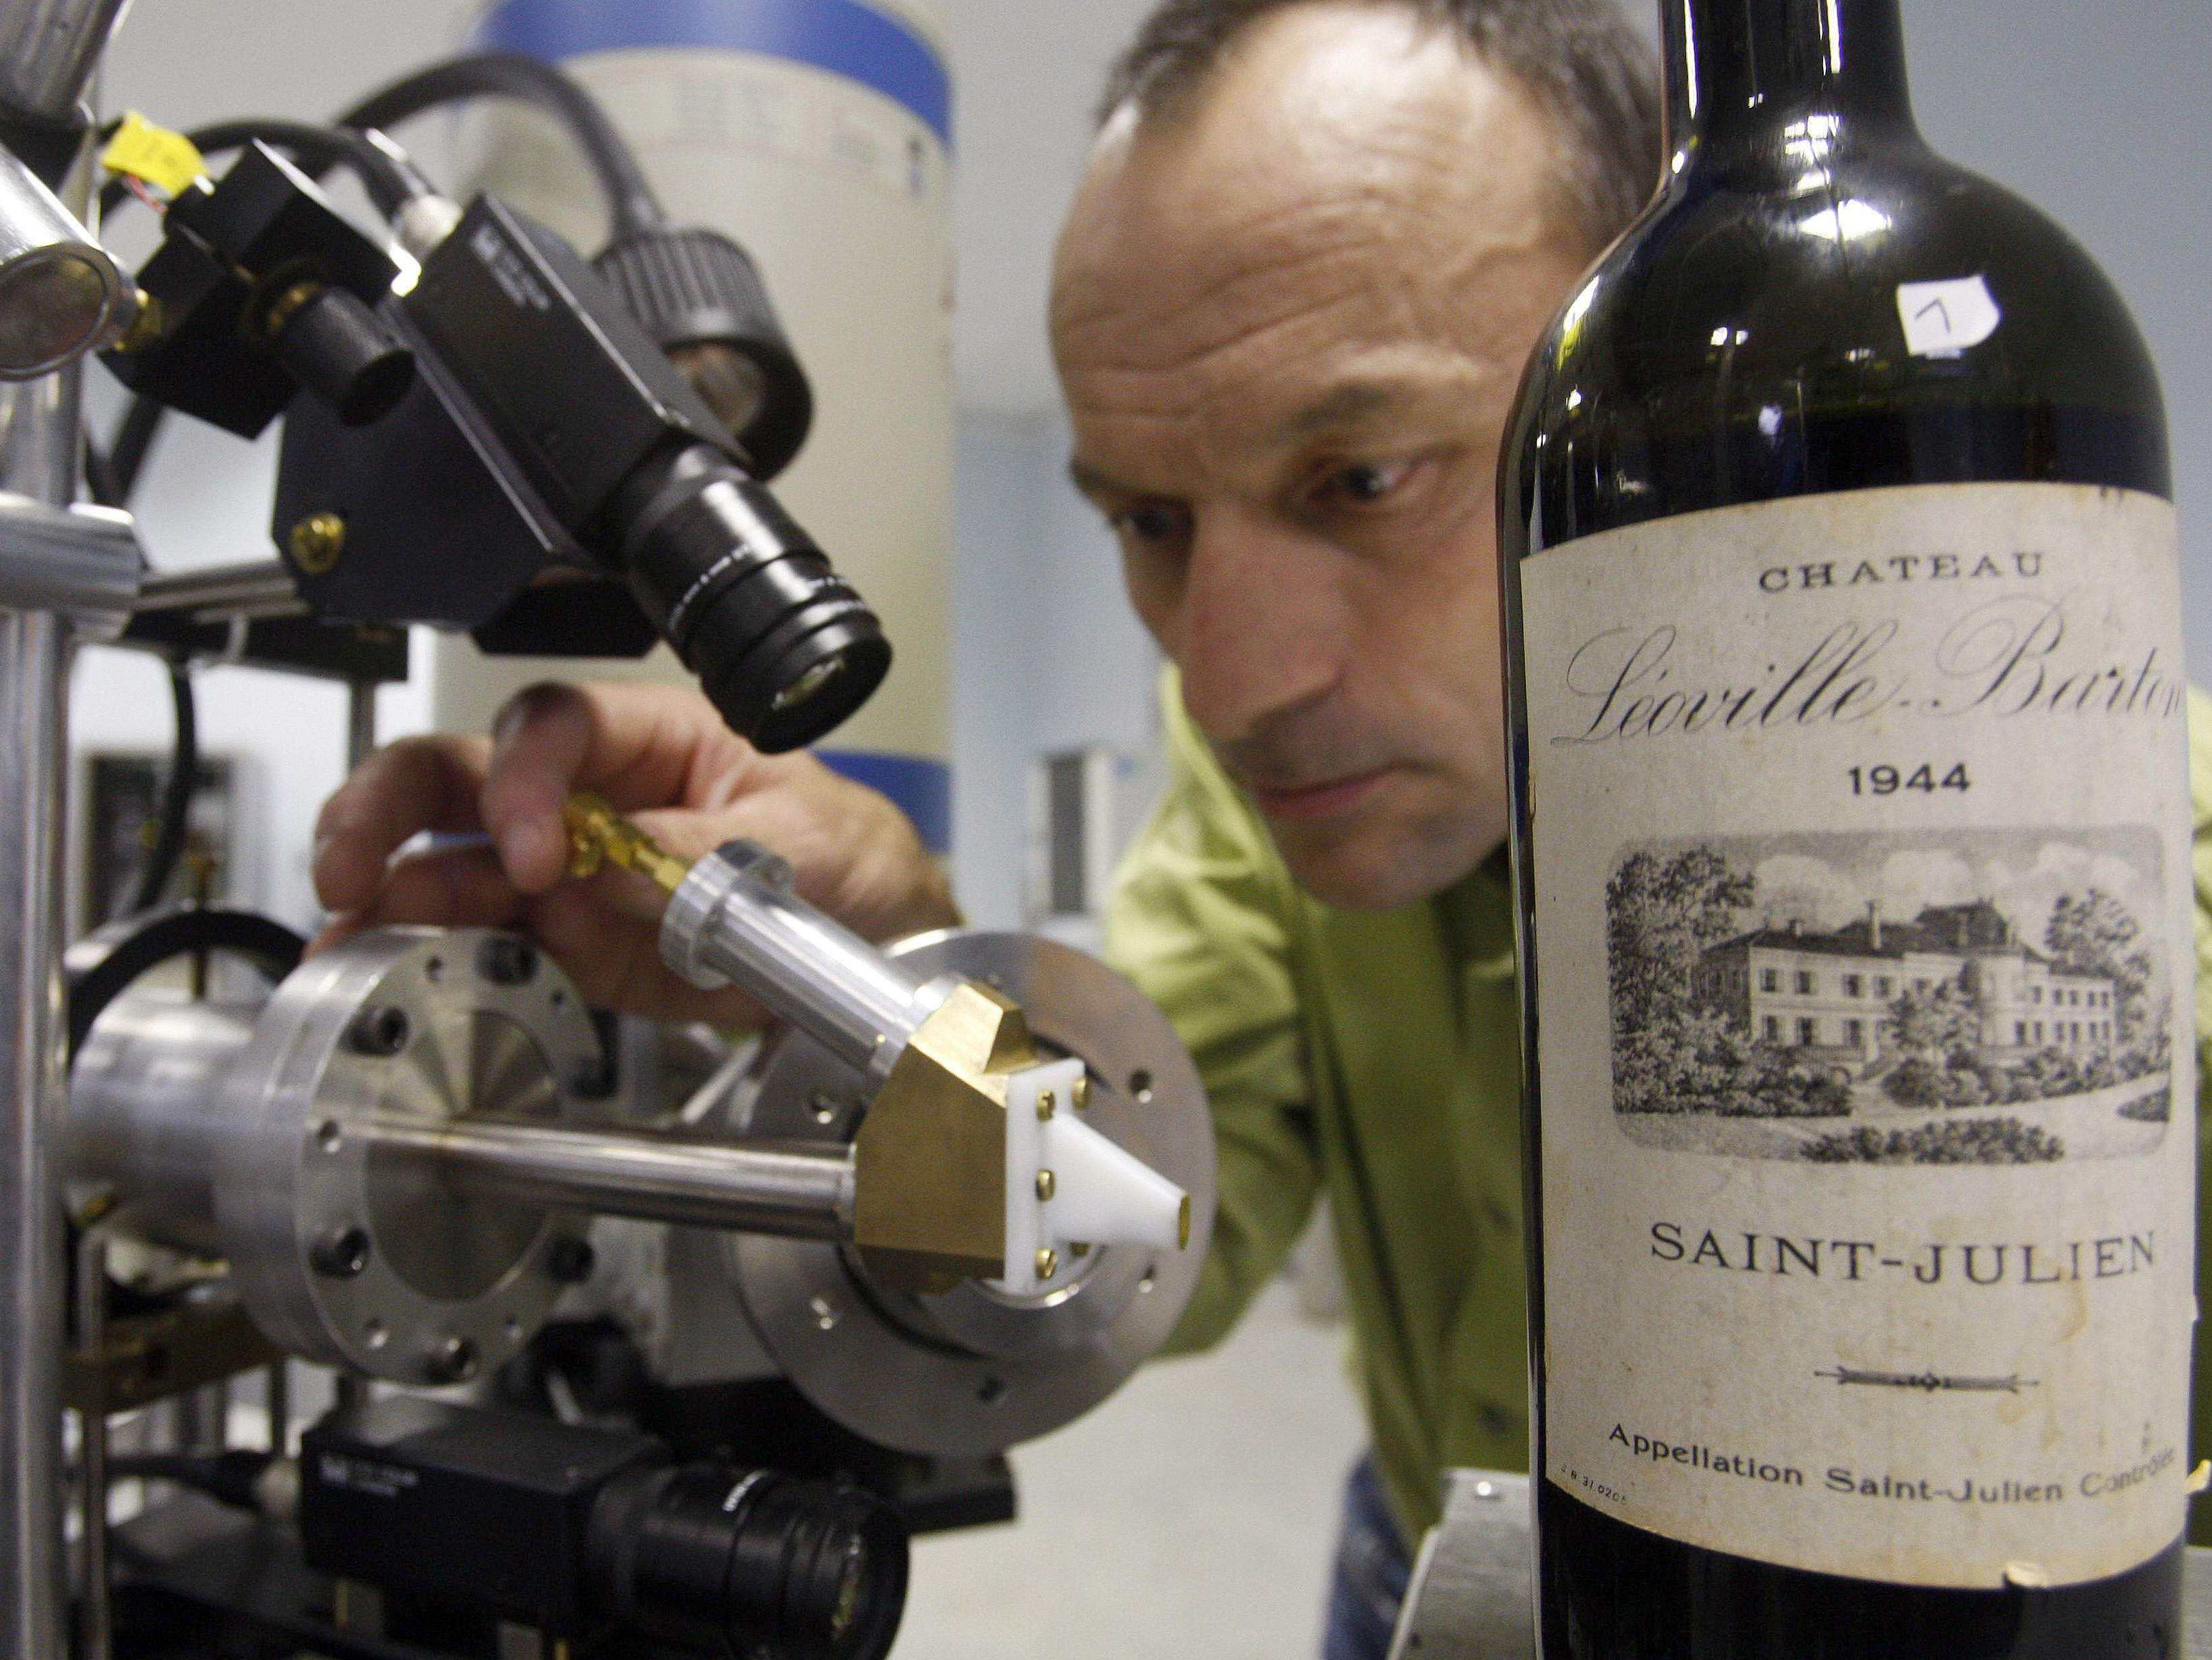 Herve Guegan of the Nuclear Research Centre of Bordeaux runs a test on a 1944 vintage bottle of Medoc wine. Photo: Regis Duvignau/Reuters /Landov